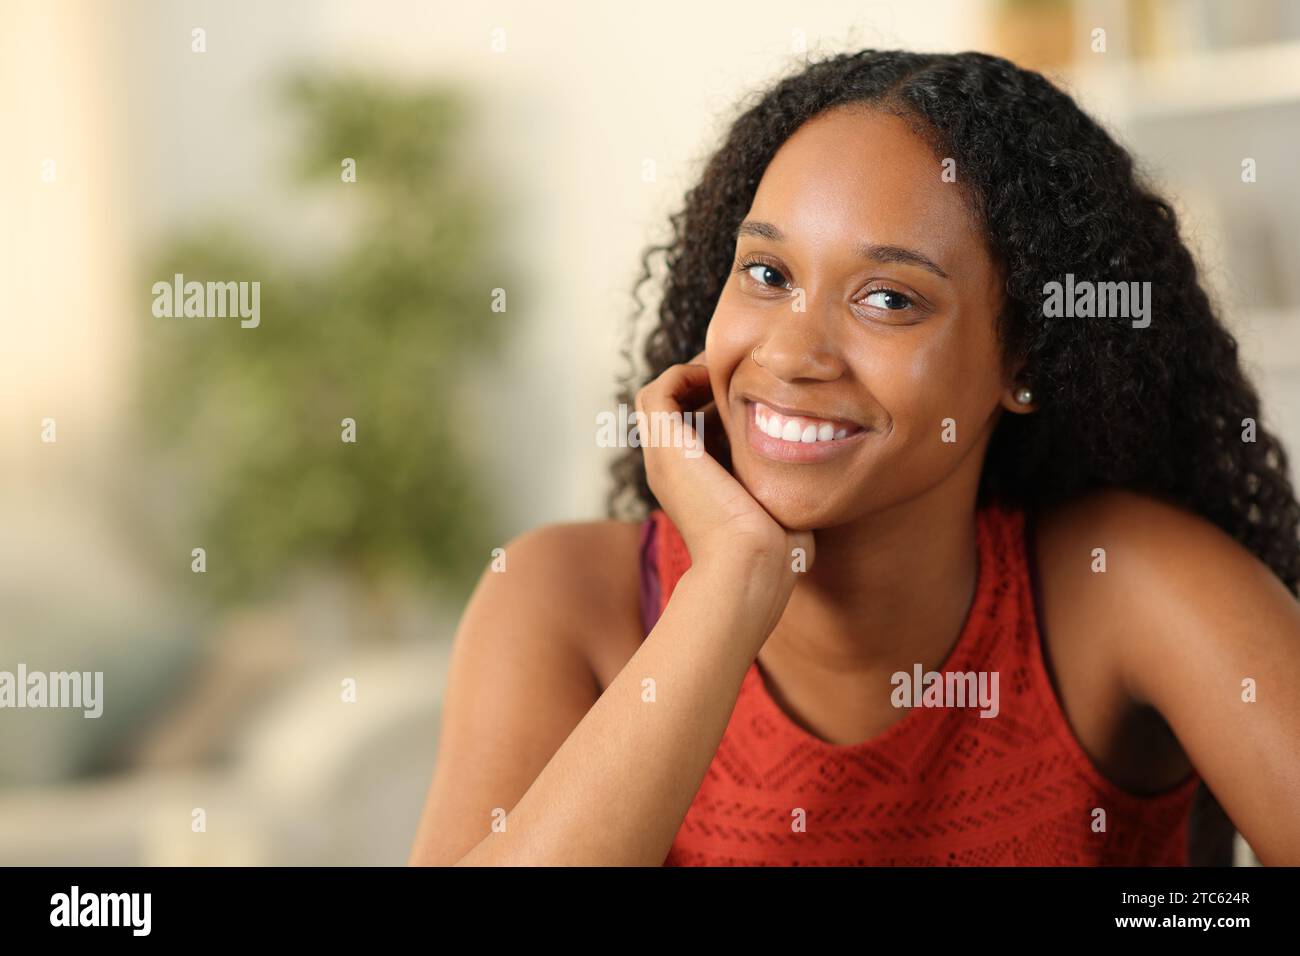 Beautiful black woman smiling at camera posing at home Stock Photo